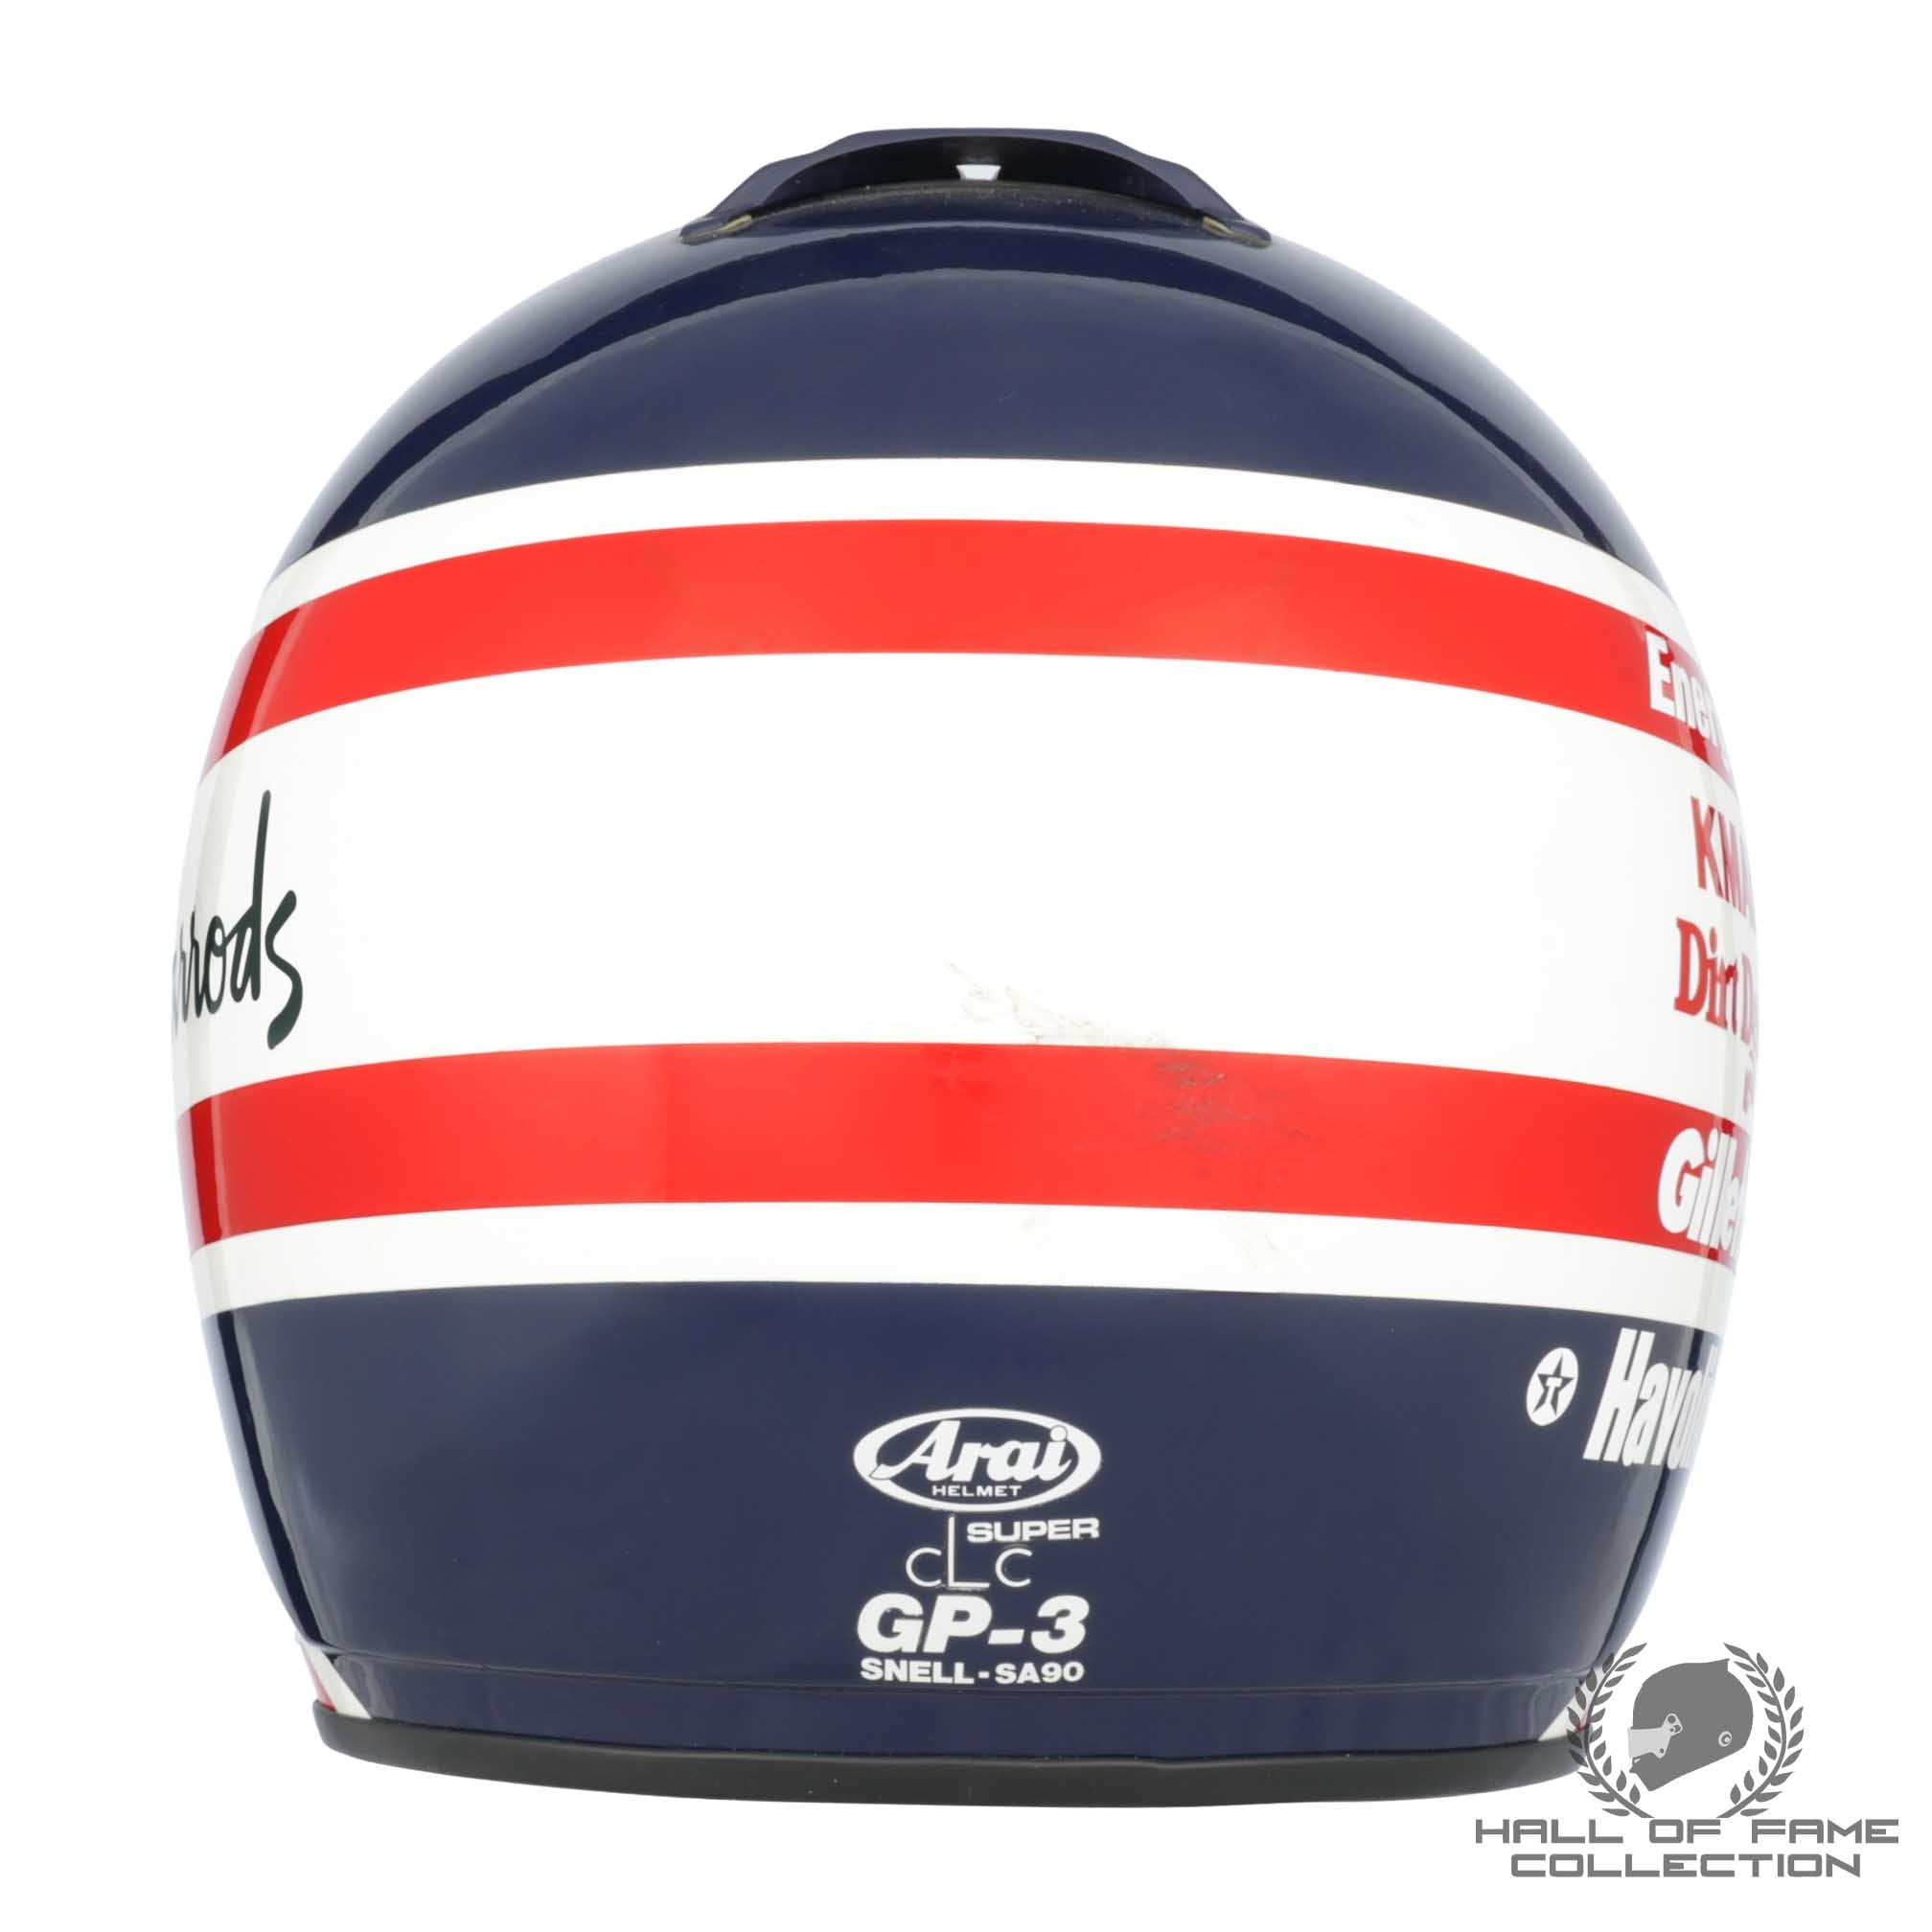 1993 Nigel Mansell Signed Replica Newman Haas Racing IndyCar Helmet